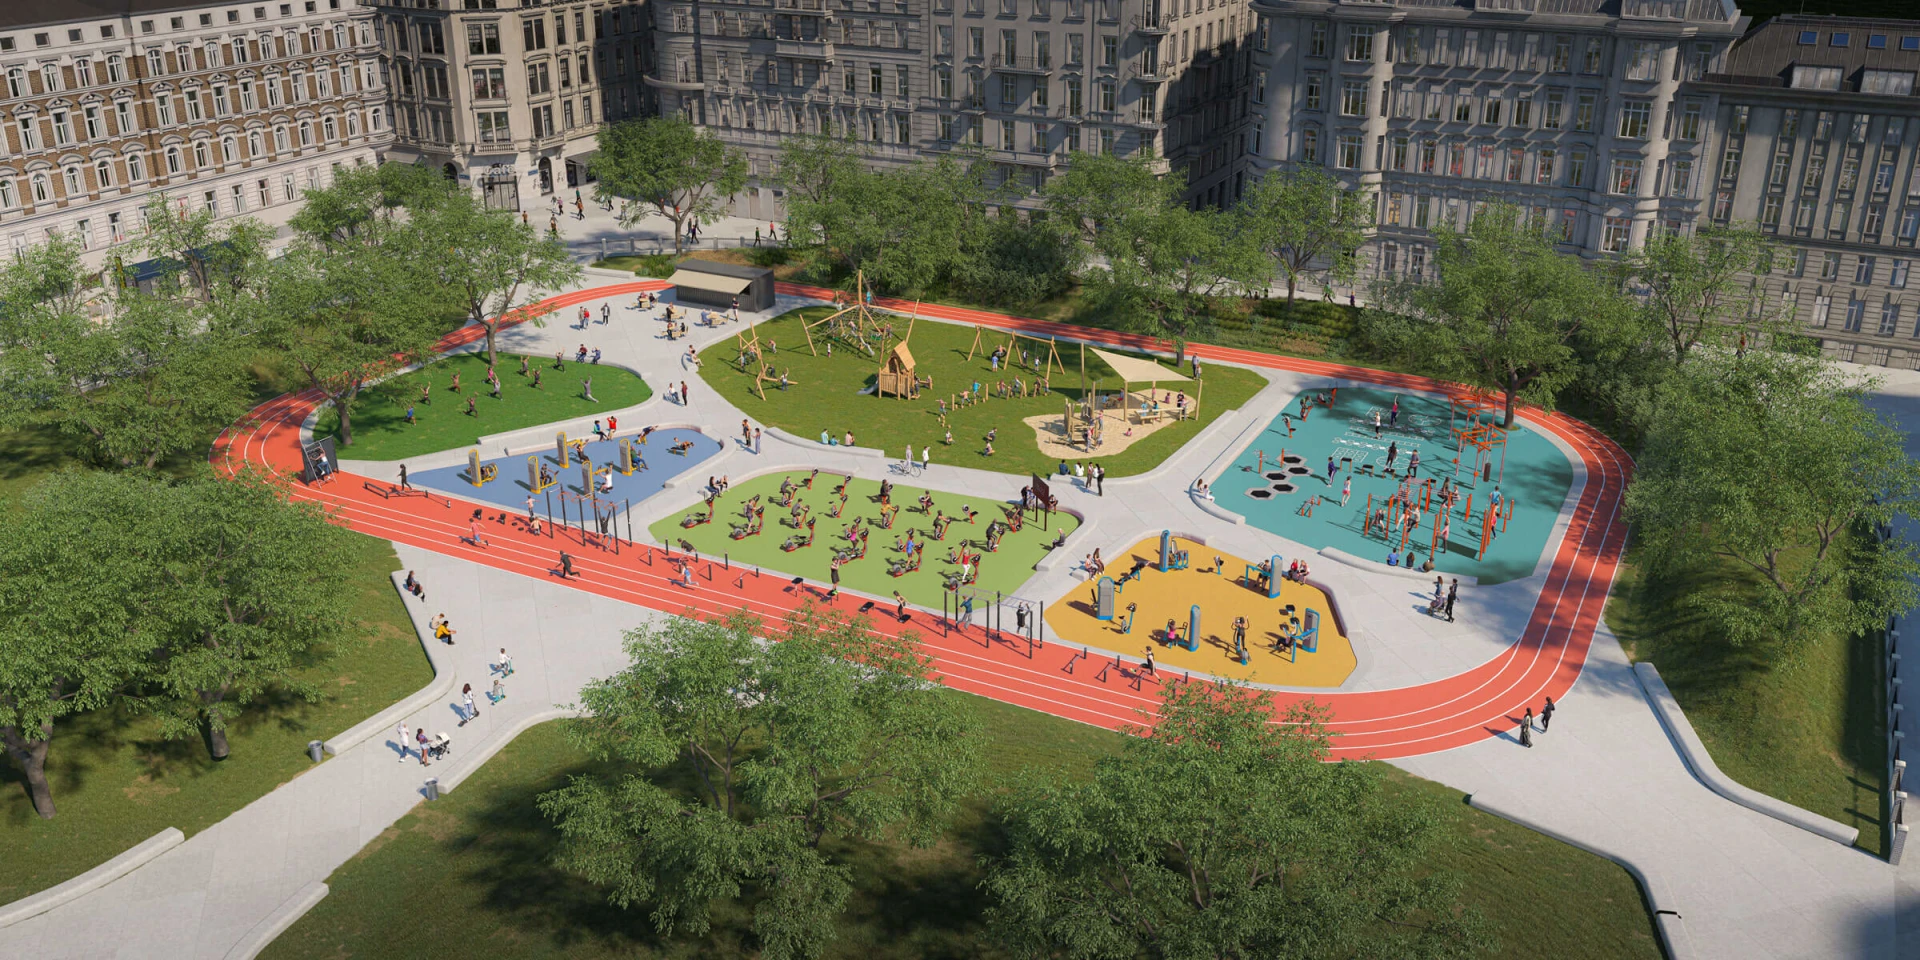 Idé til design af et udendørs gymnastik- og legepladsområde for lokalsamfund